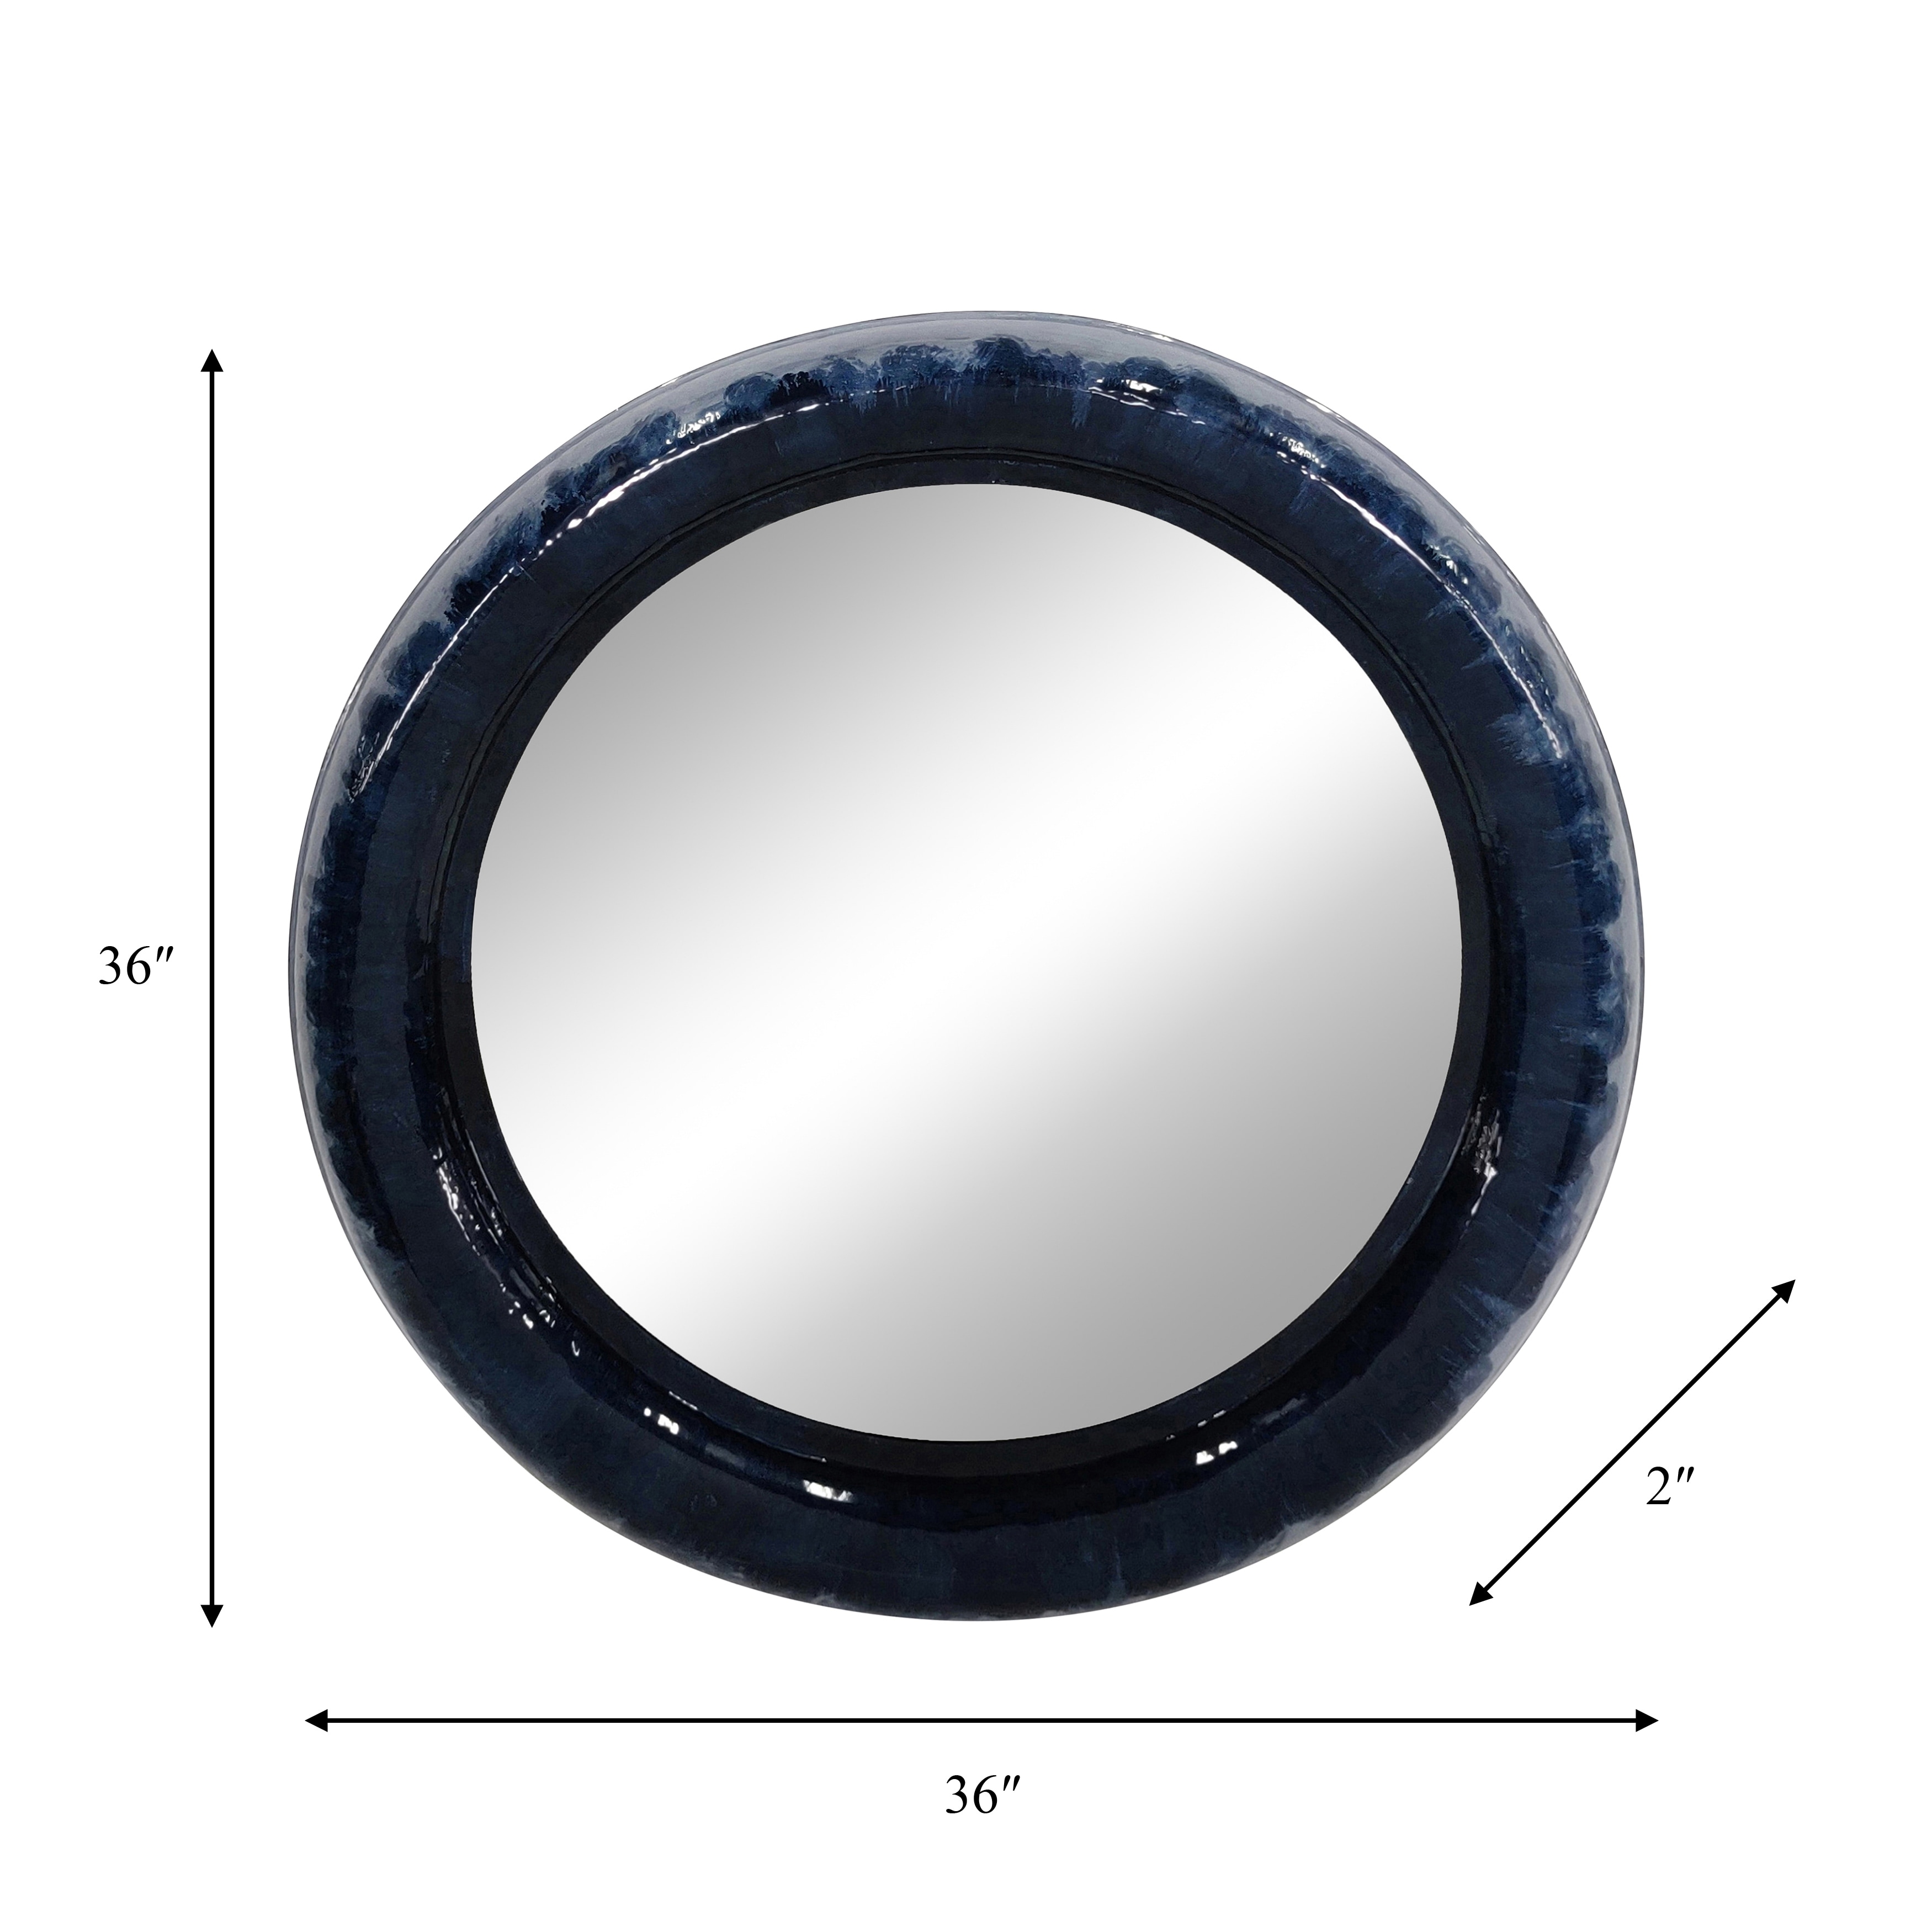 Metal 36" Round Mirror, Blue 36.0"H - 36.0" x 36.0" x 36.0"